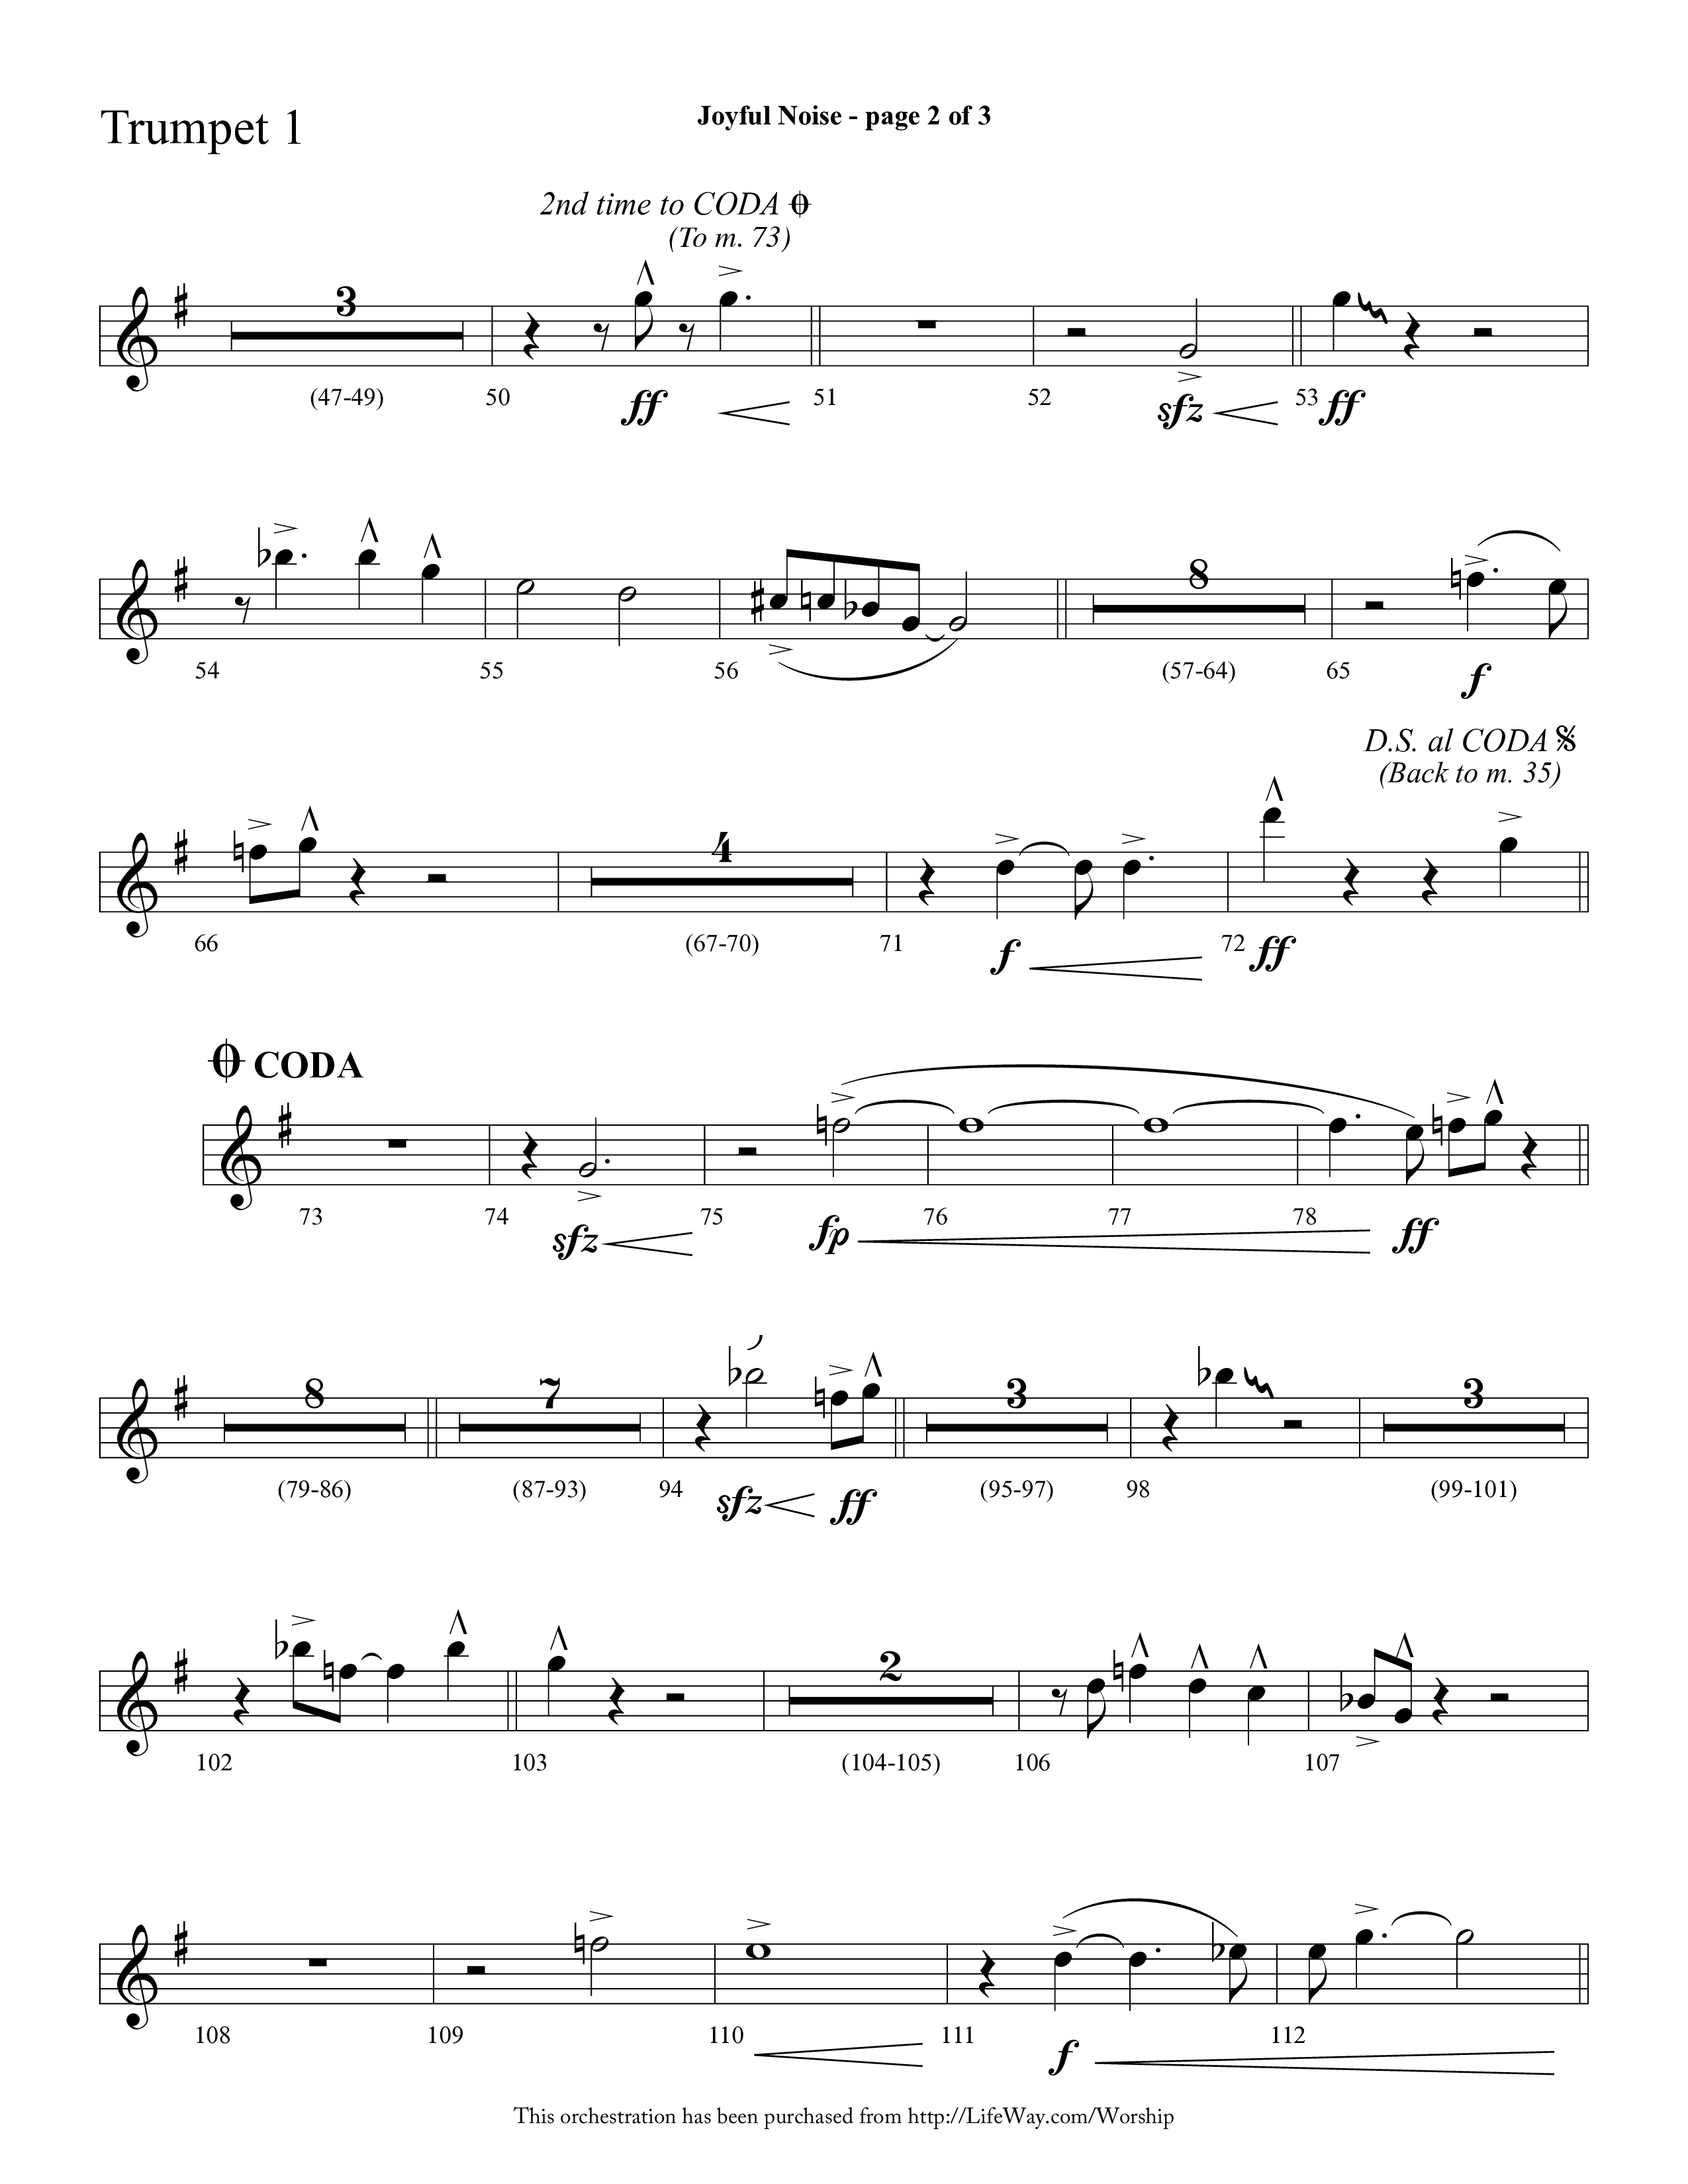 Joyful Noise (Choral Anthem SATB) Trumpet 1 (Lifeway Choral / Arr. Cliff Duren)